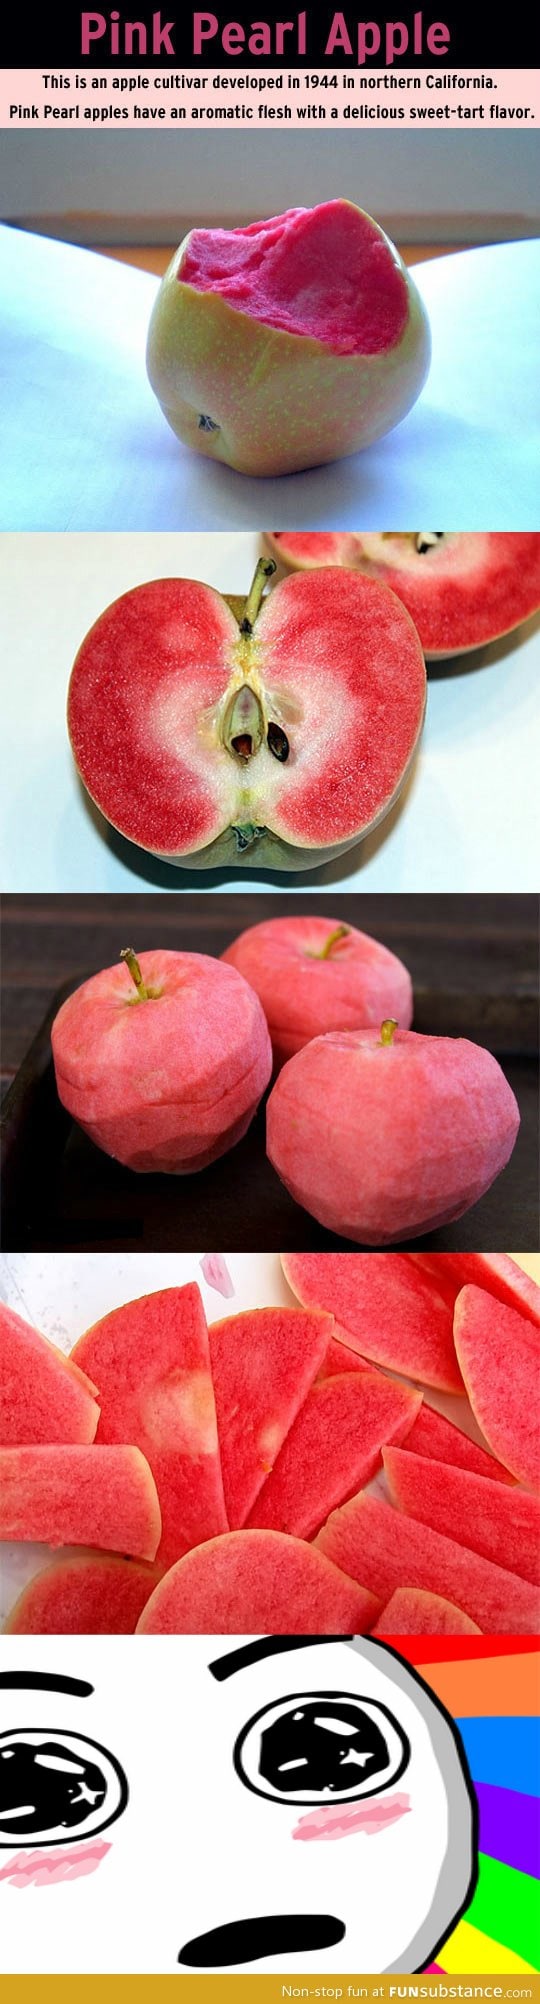 Pink pearl apples!